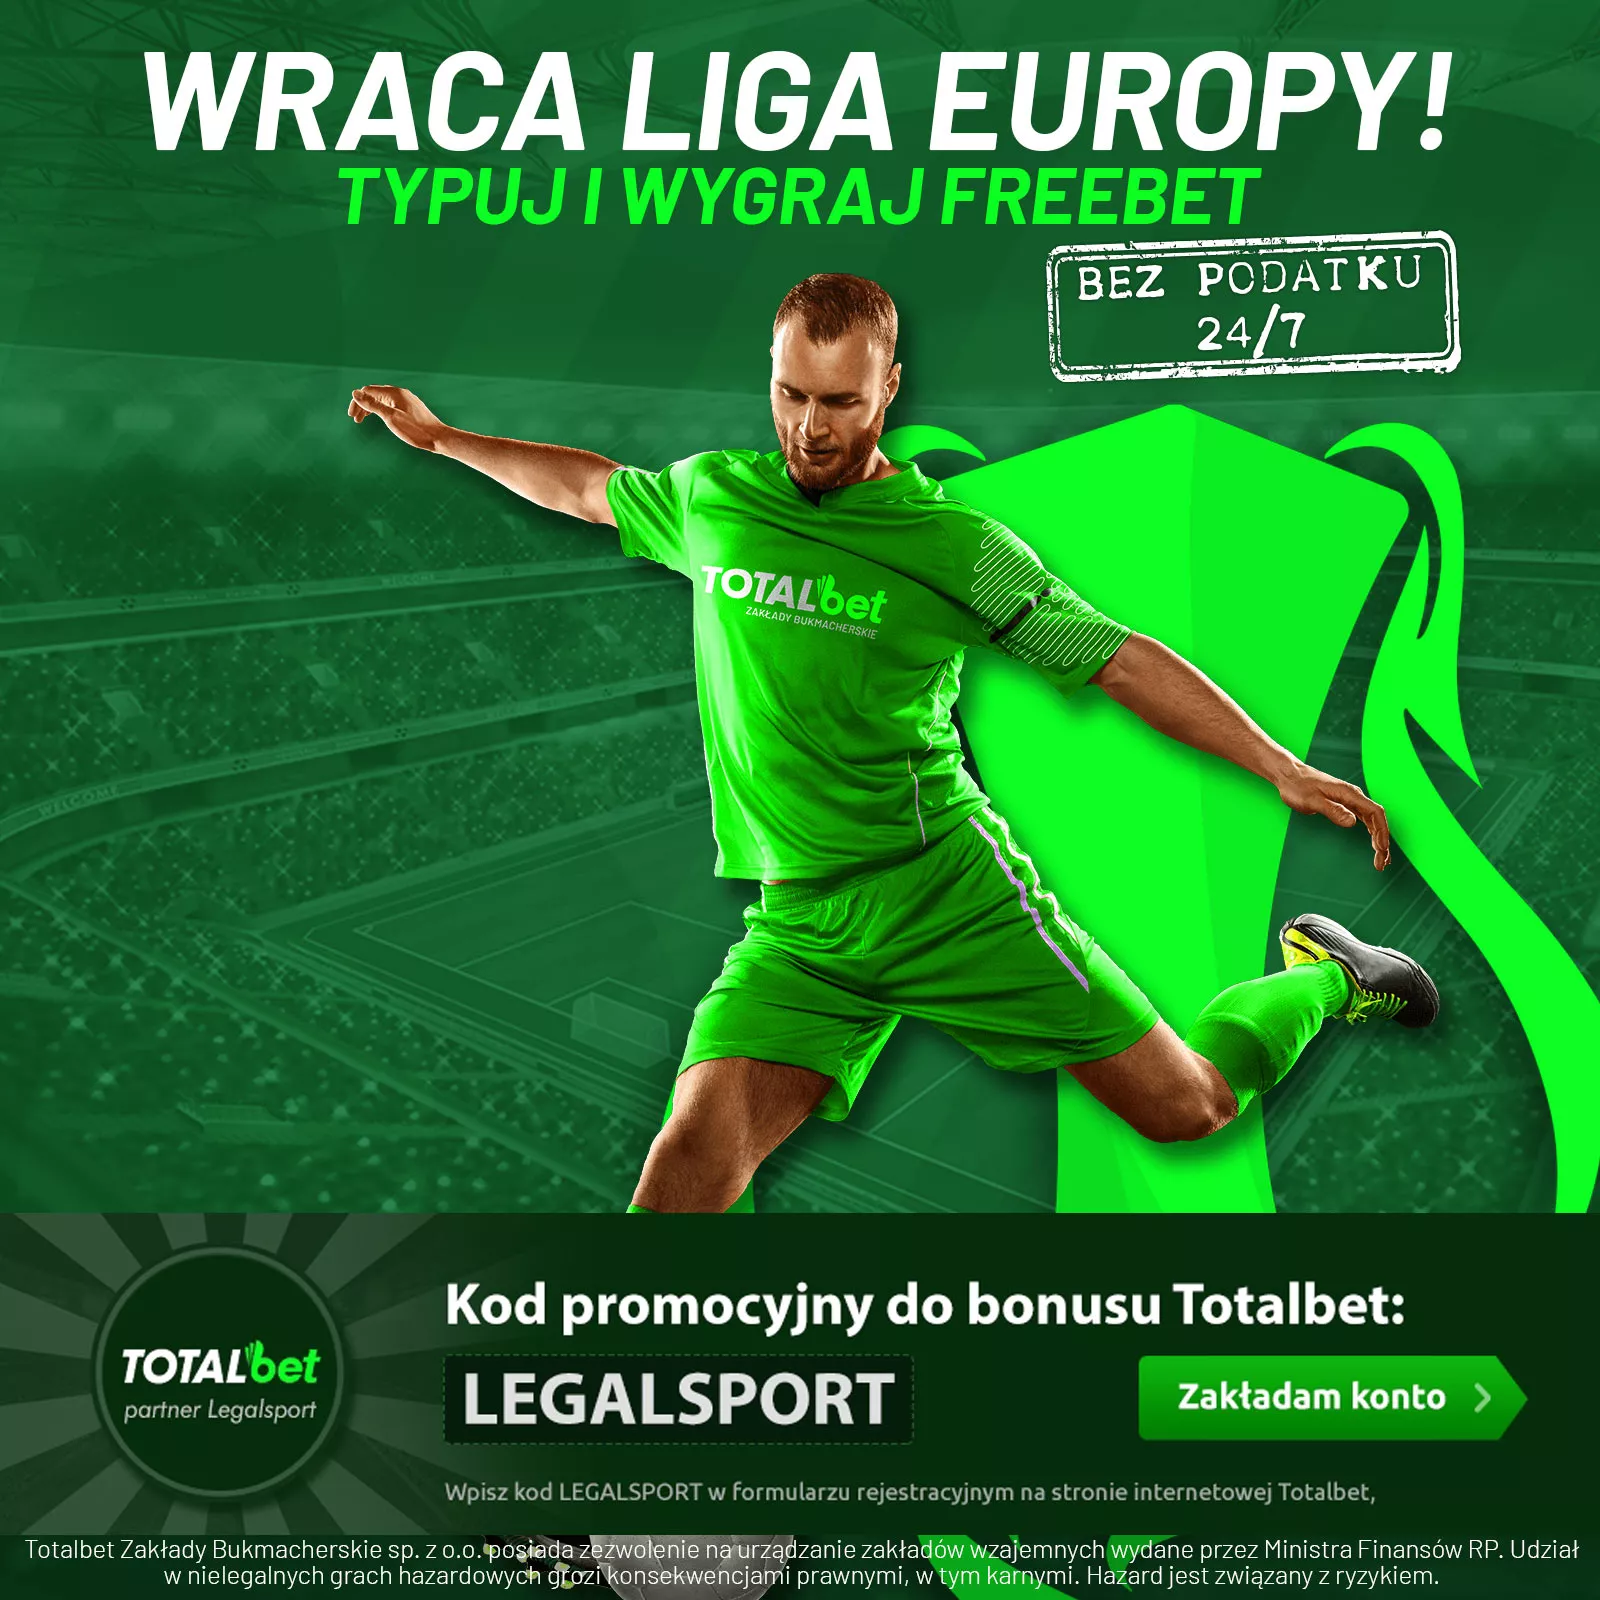 Freebet Liga Europy